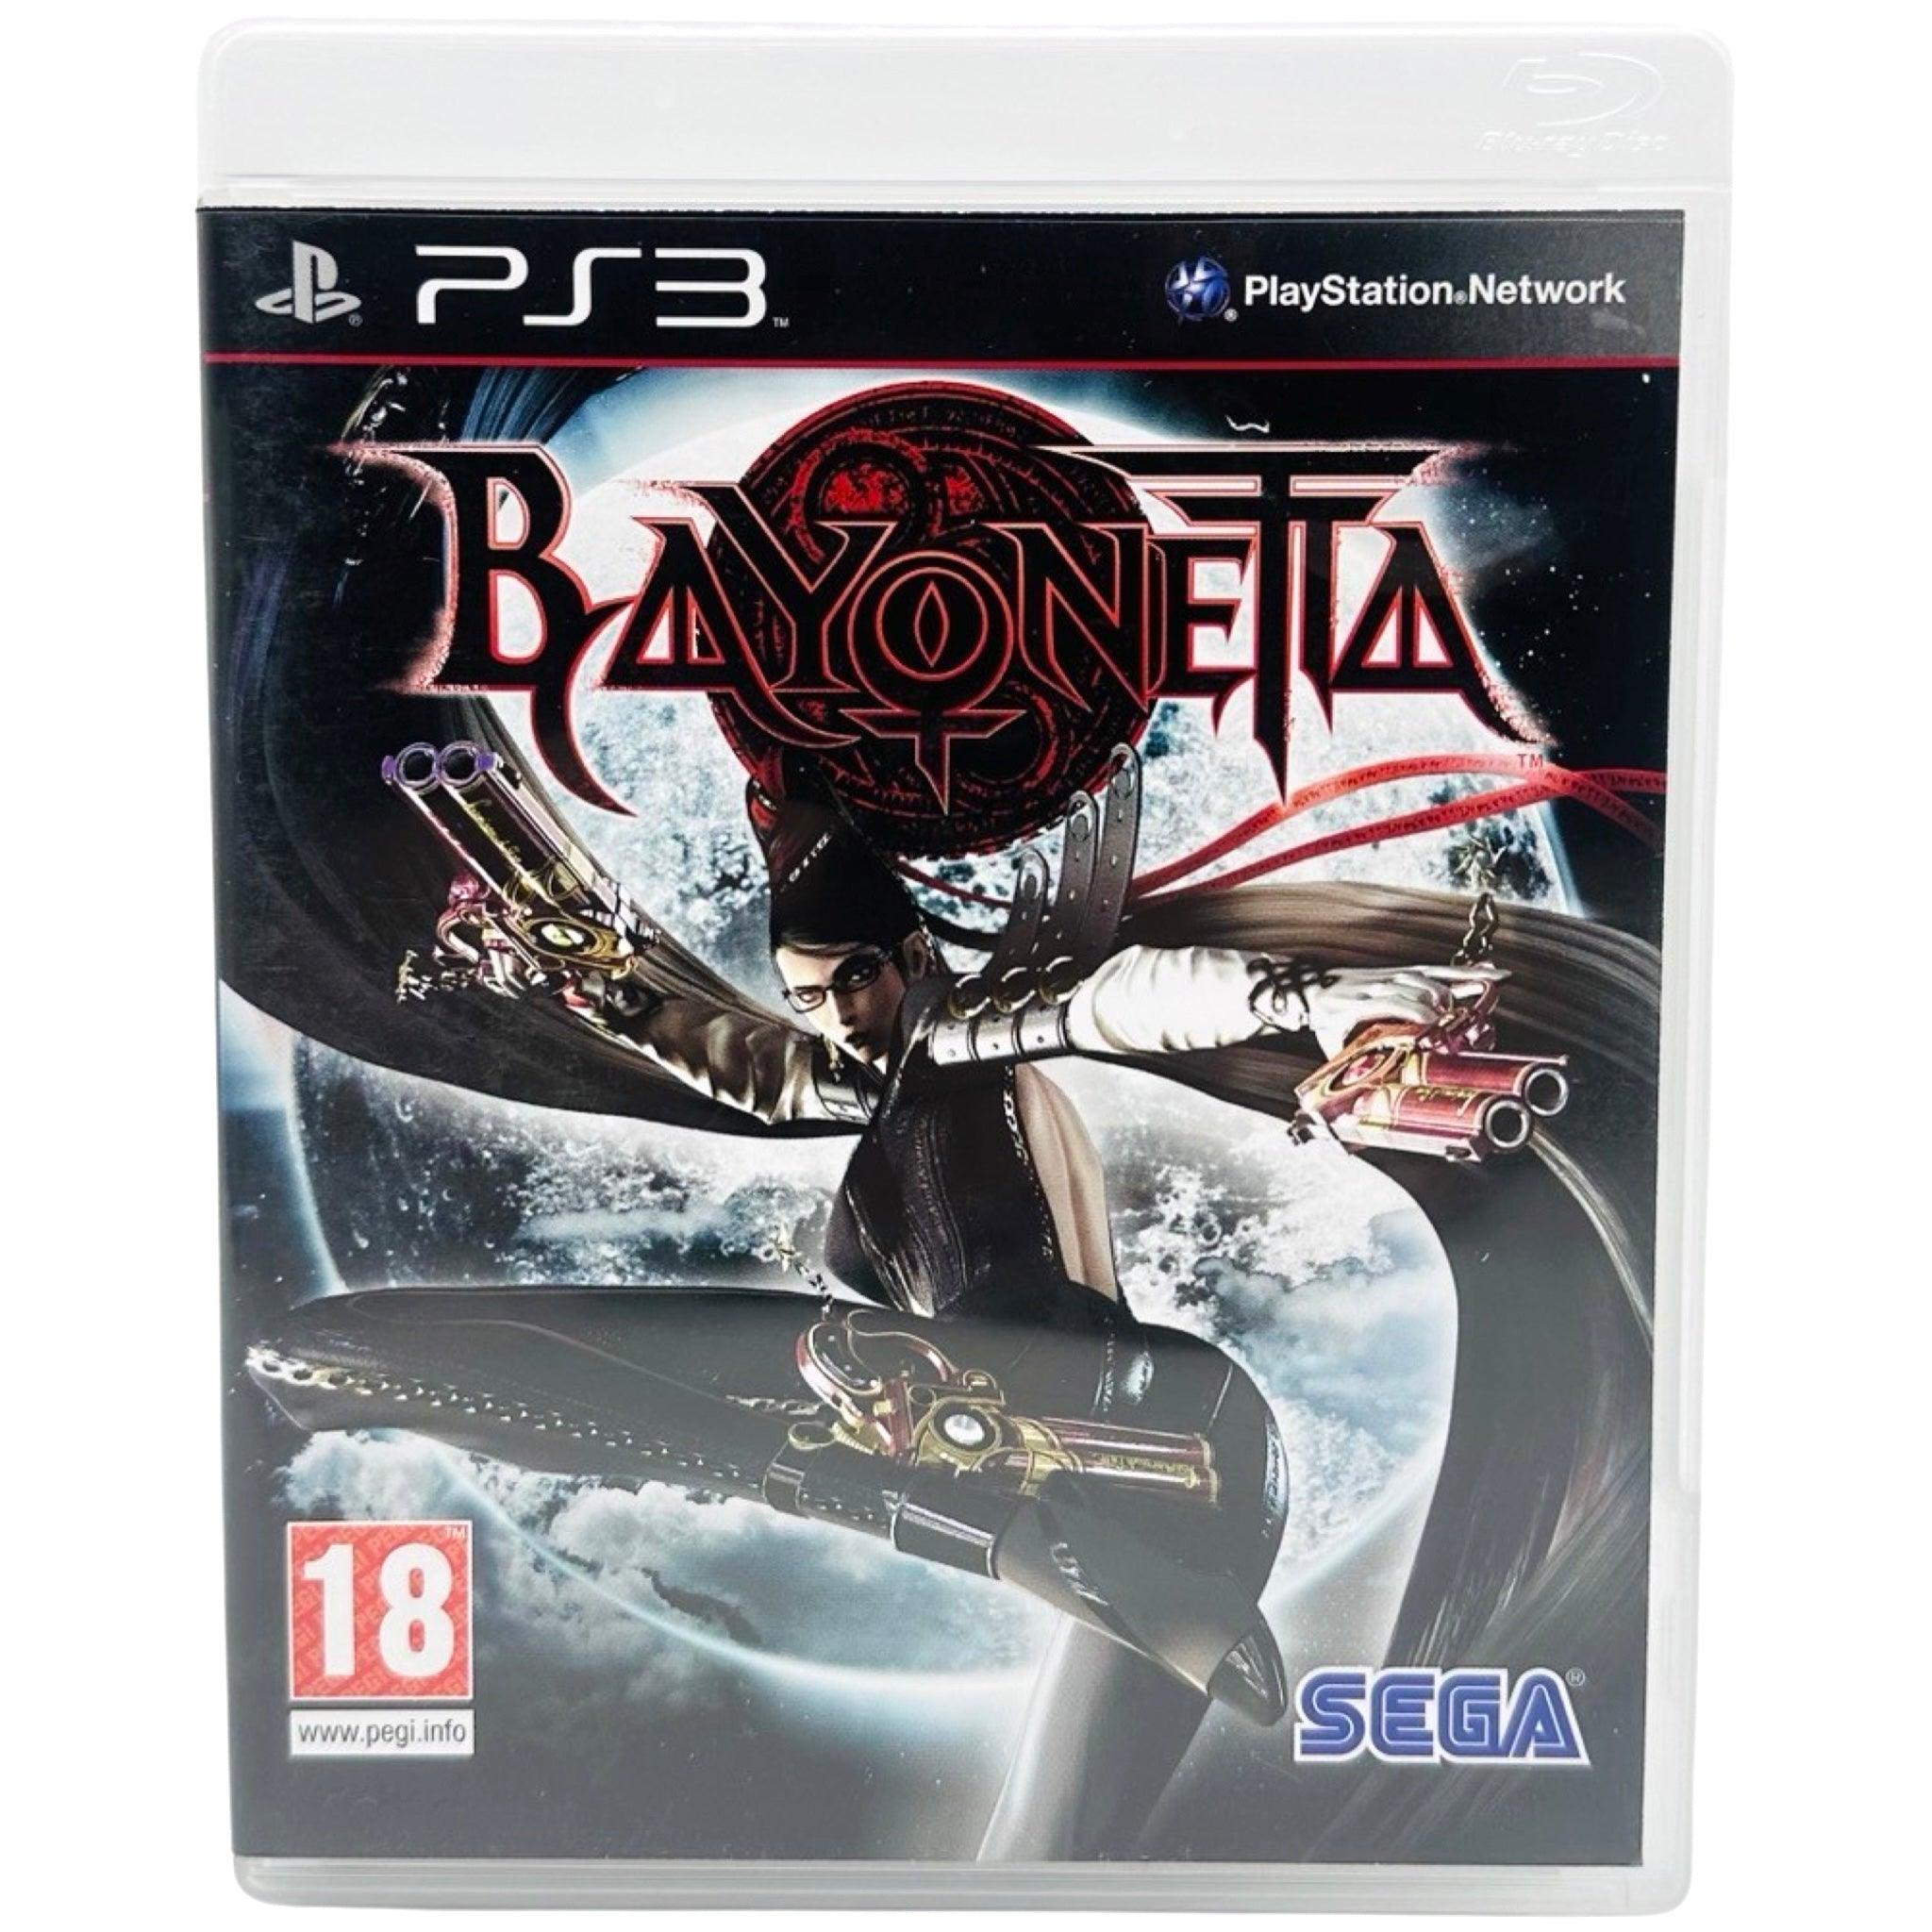 PS3: Bayonetta - RetroGaming.No